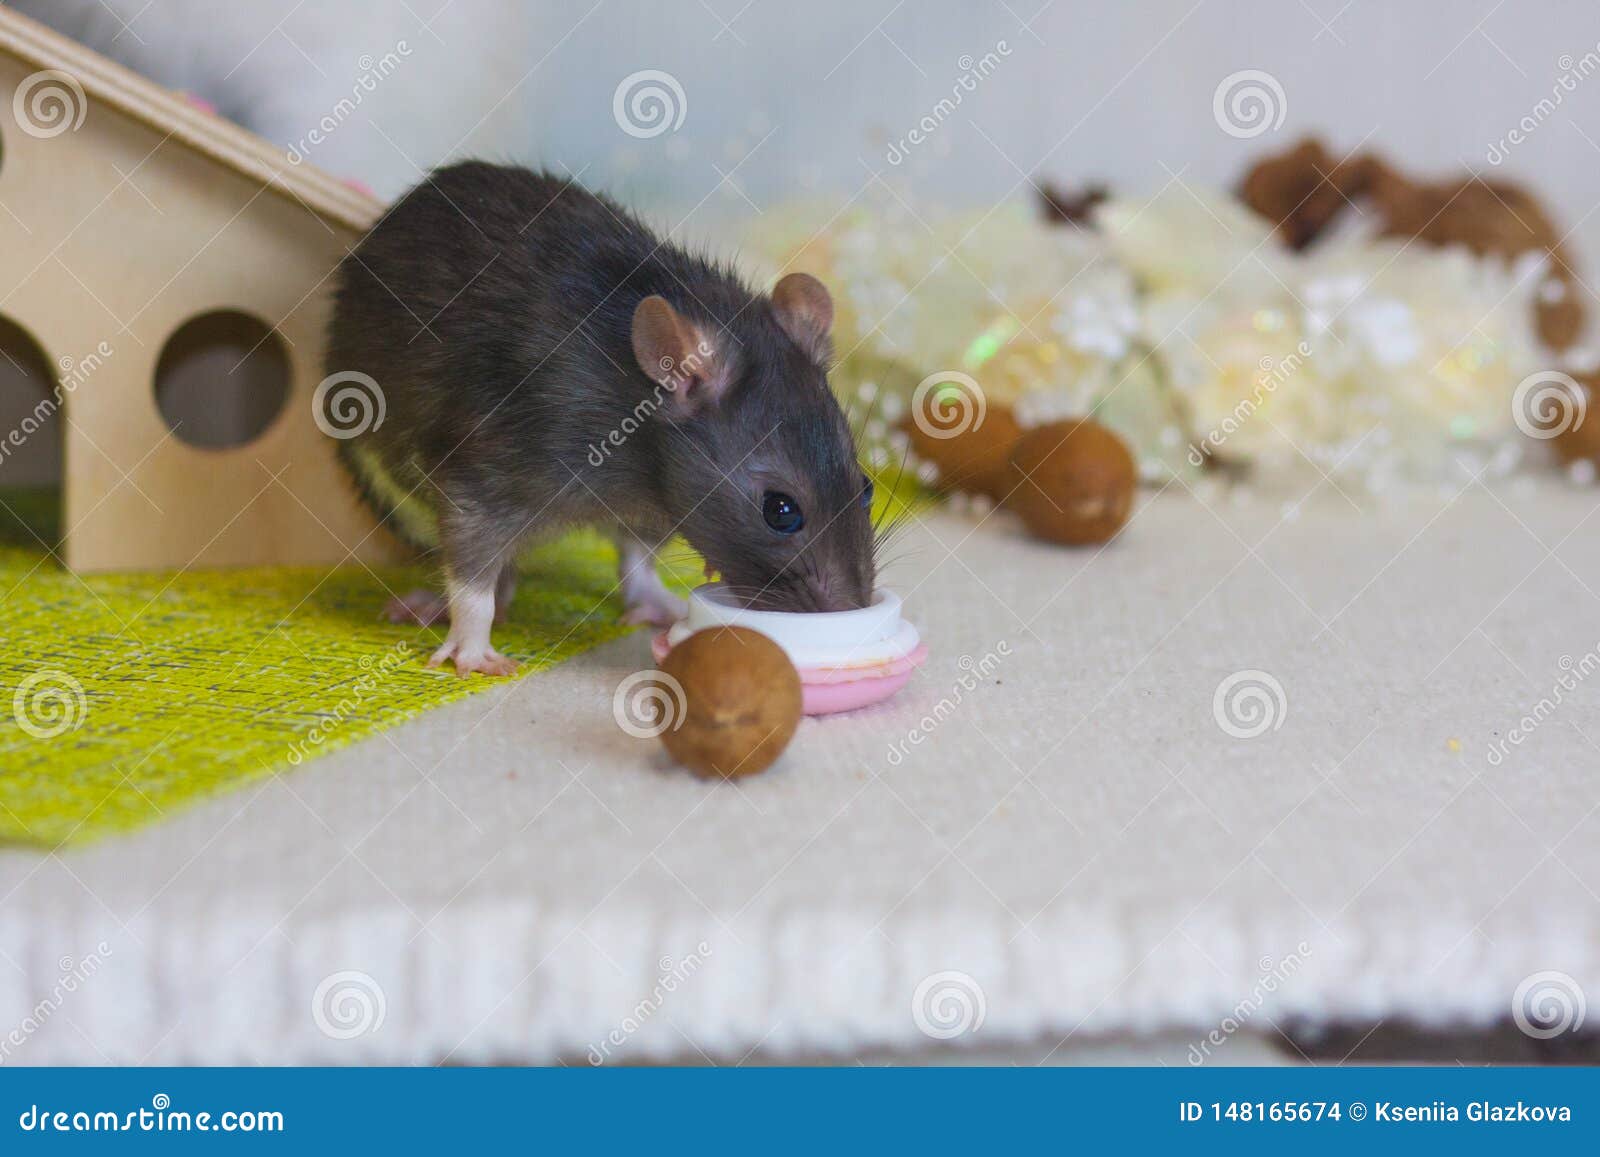 Можно ли крысам редиску. Крыса с орехом. Фундук крысам. Мыши едят орехи. Мышь грызет орехи.